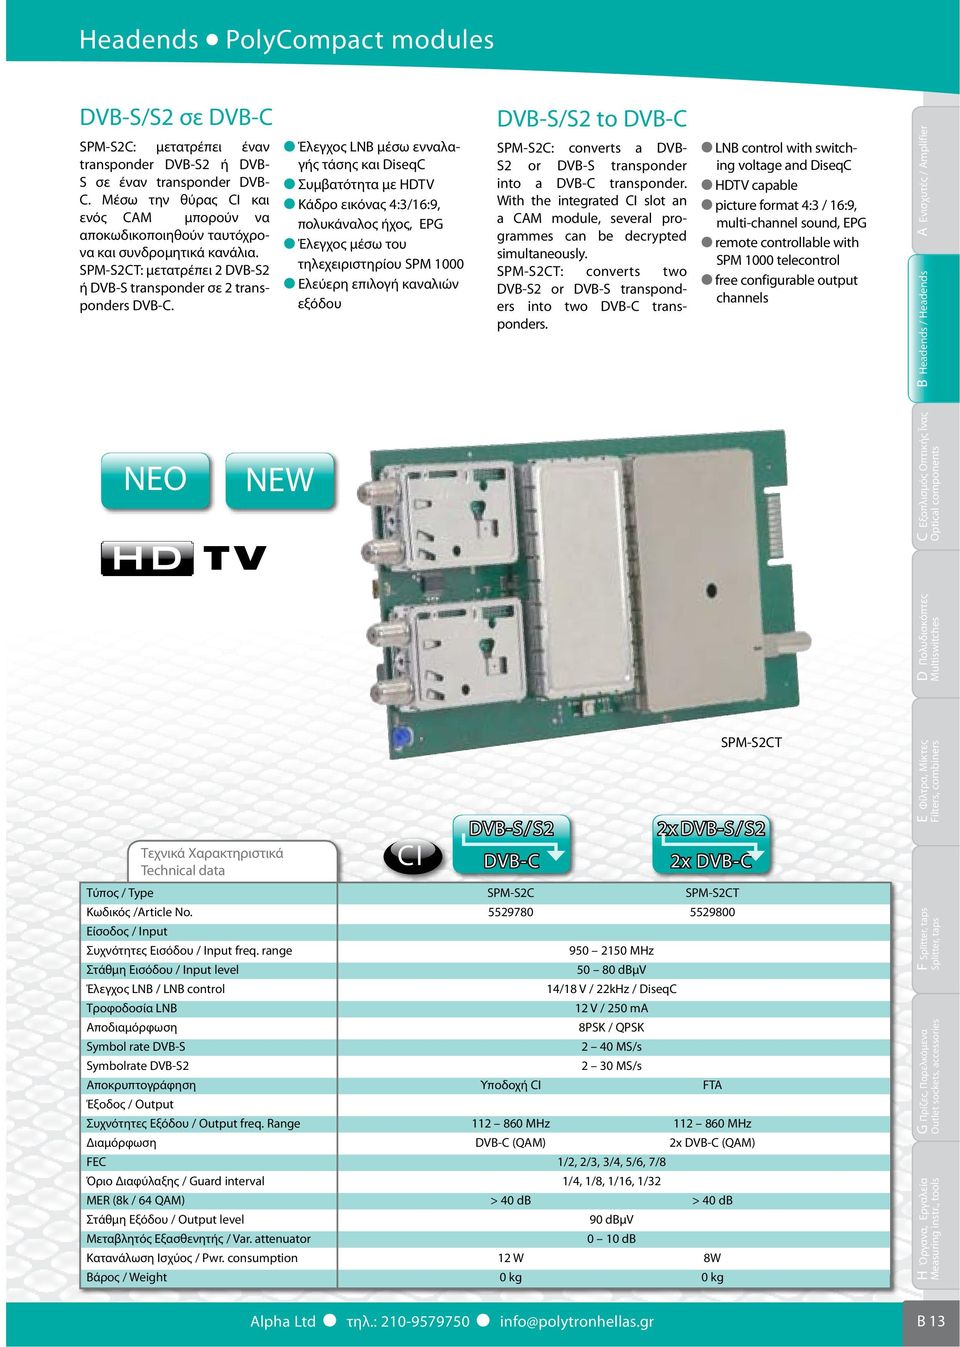 Έλεγχος LNB μέσω ενναλαγής τάσης και DiseqC Συμβατότητα με HDTV Κάδρο εικόνας 4:3/16:9, πολυκάναλος ήχος, EPG Έλεγχος μέσω του τηλεχειριστηρίου SPM 1000 Ελεύερη επιλογή καναλιών εξόδου DVB-S/S2 to